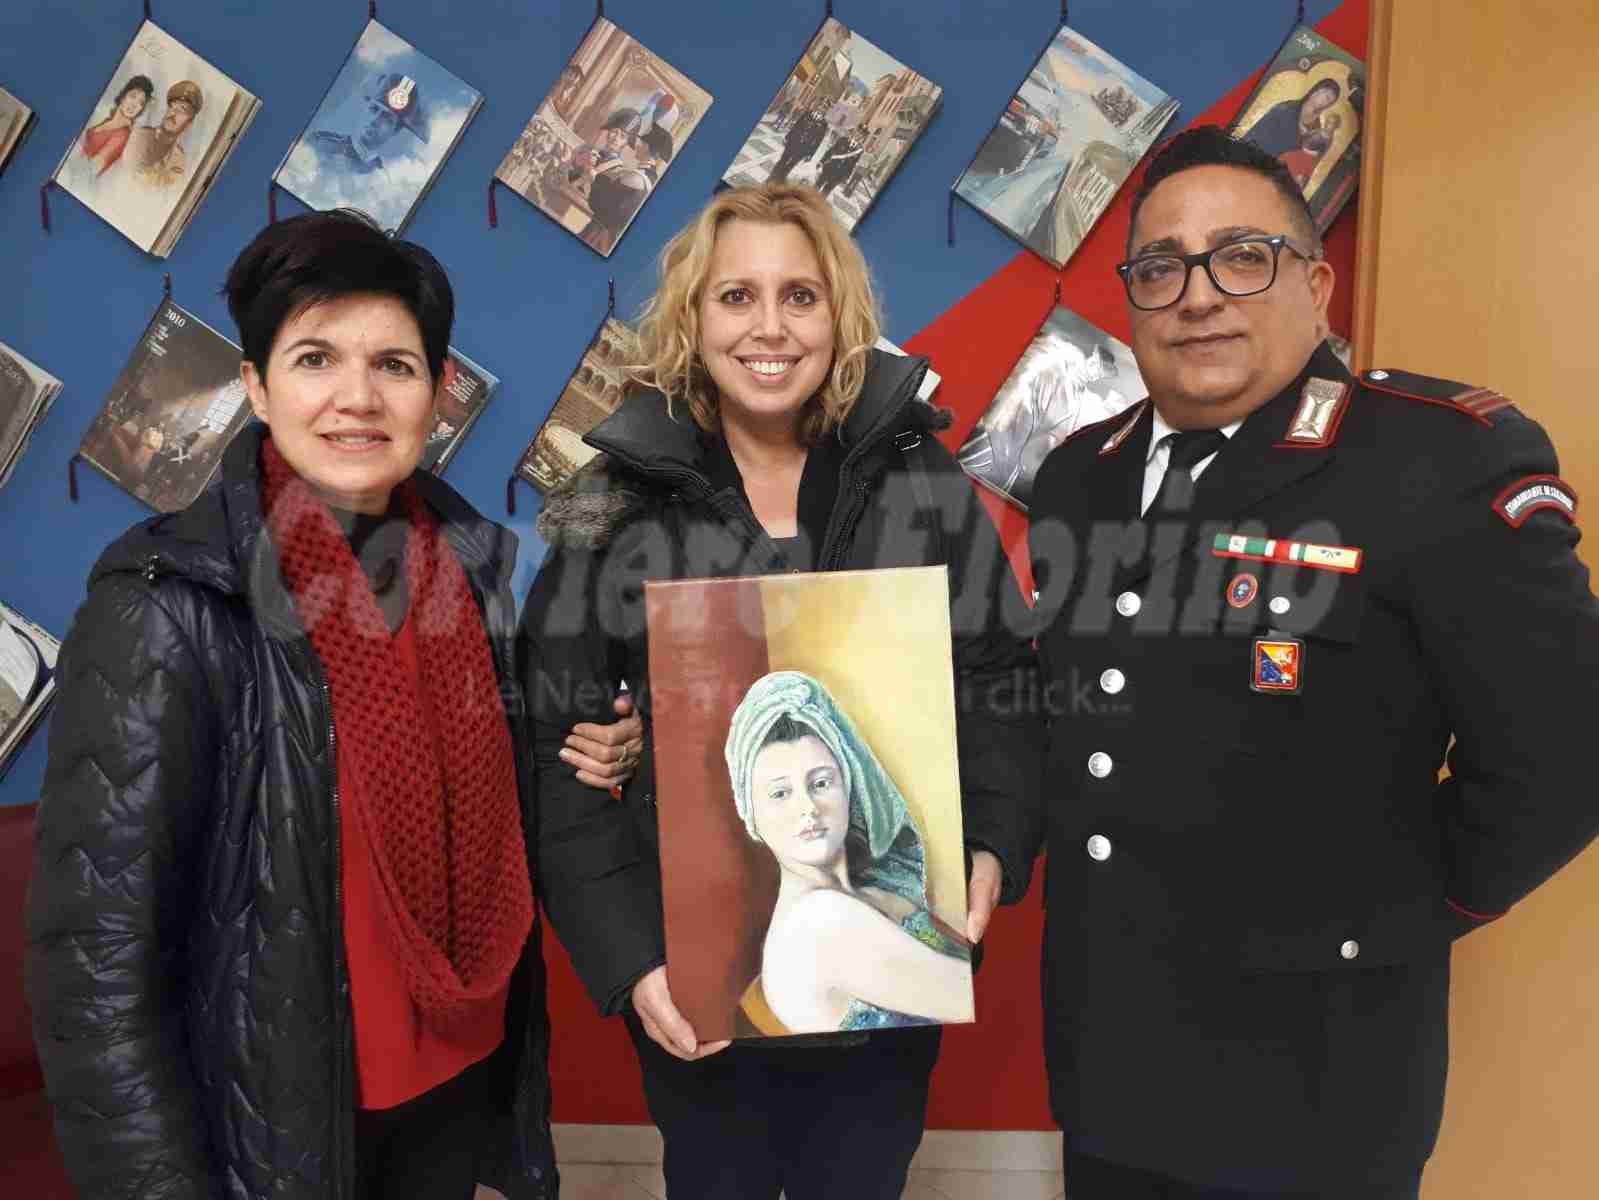 Braccato dai Carabinieri lascia il quadro in una chiesa; ritrovata l’opera di Nilde Russo